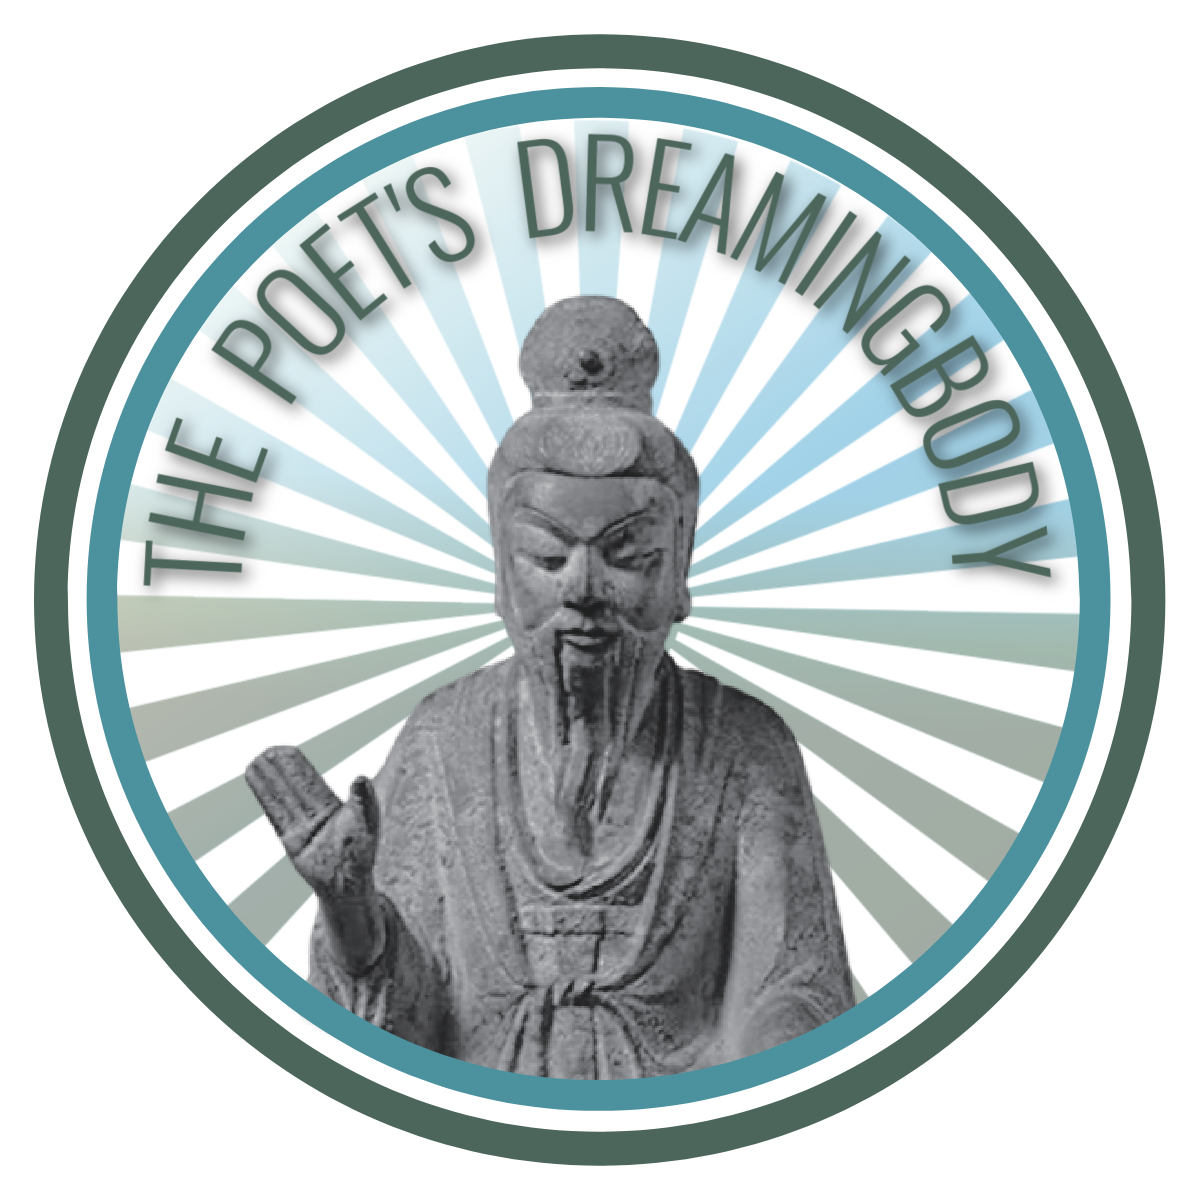 The Poet's Dreamingbody